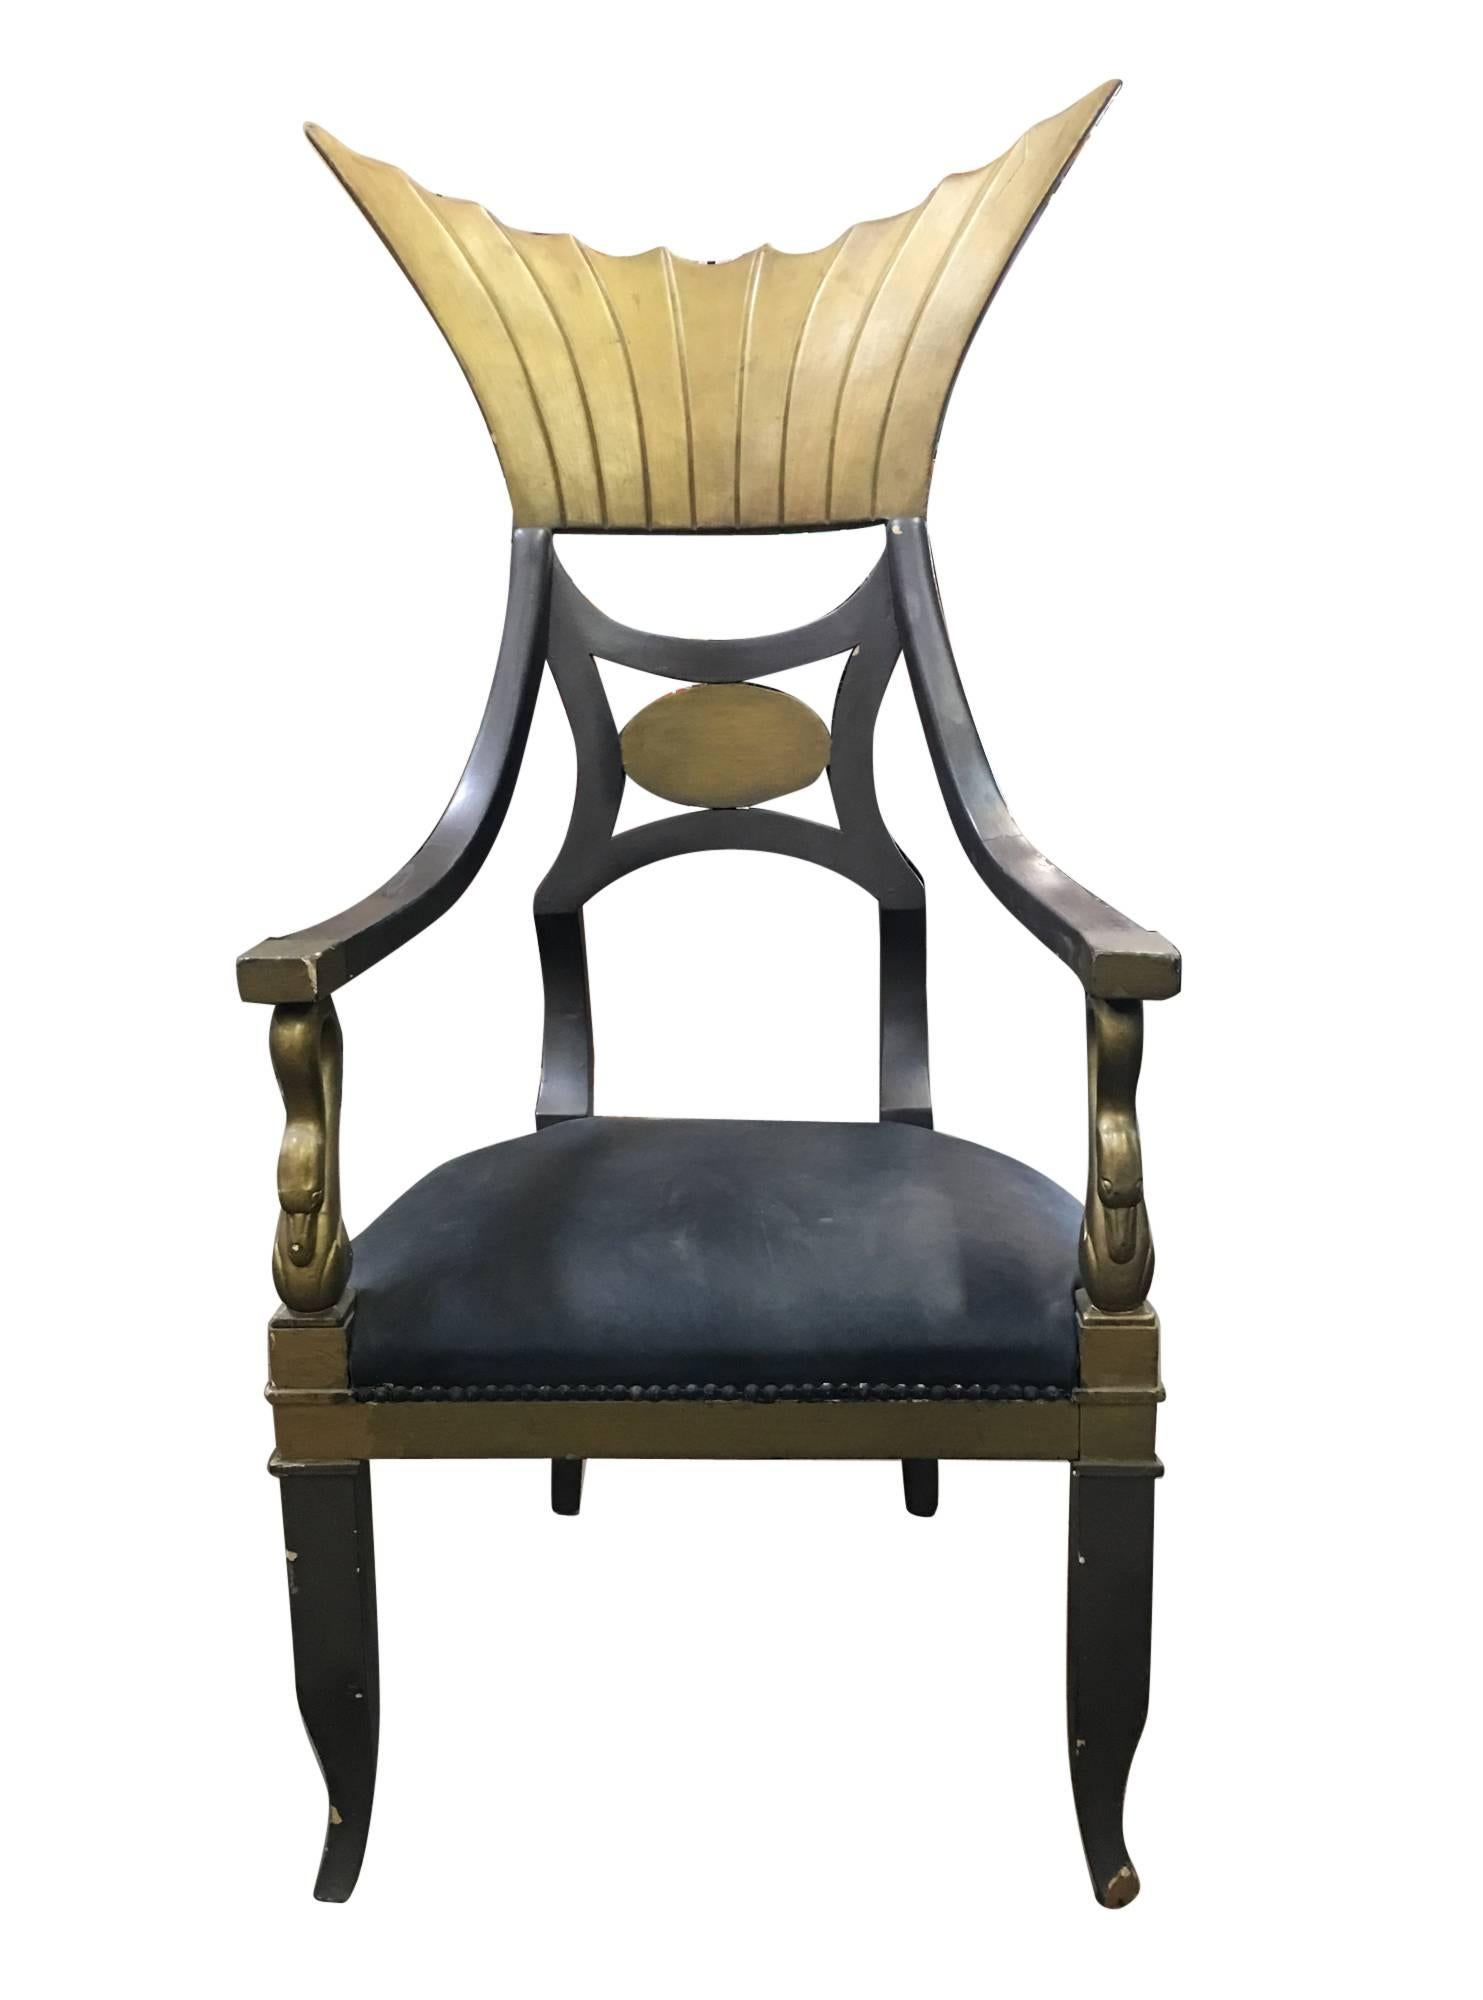 Fauteuil trône égyptien original utilisé dans le film classique Cléopâtre de Claudette Colbert en 1934, des studios Paramount. Le fauteuil dramatique, dans lequel s'asseyait la star, est visible dans les scènes de la chambre à coucher de Can. La